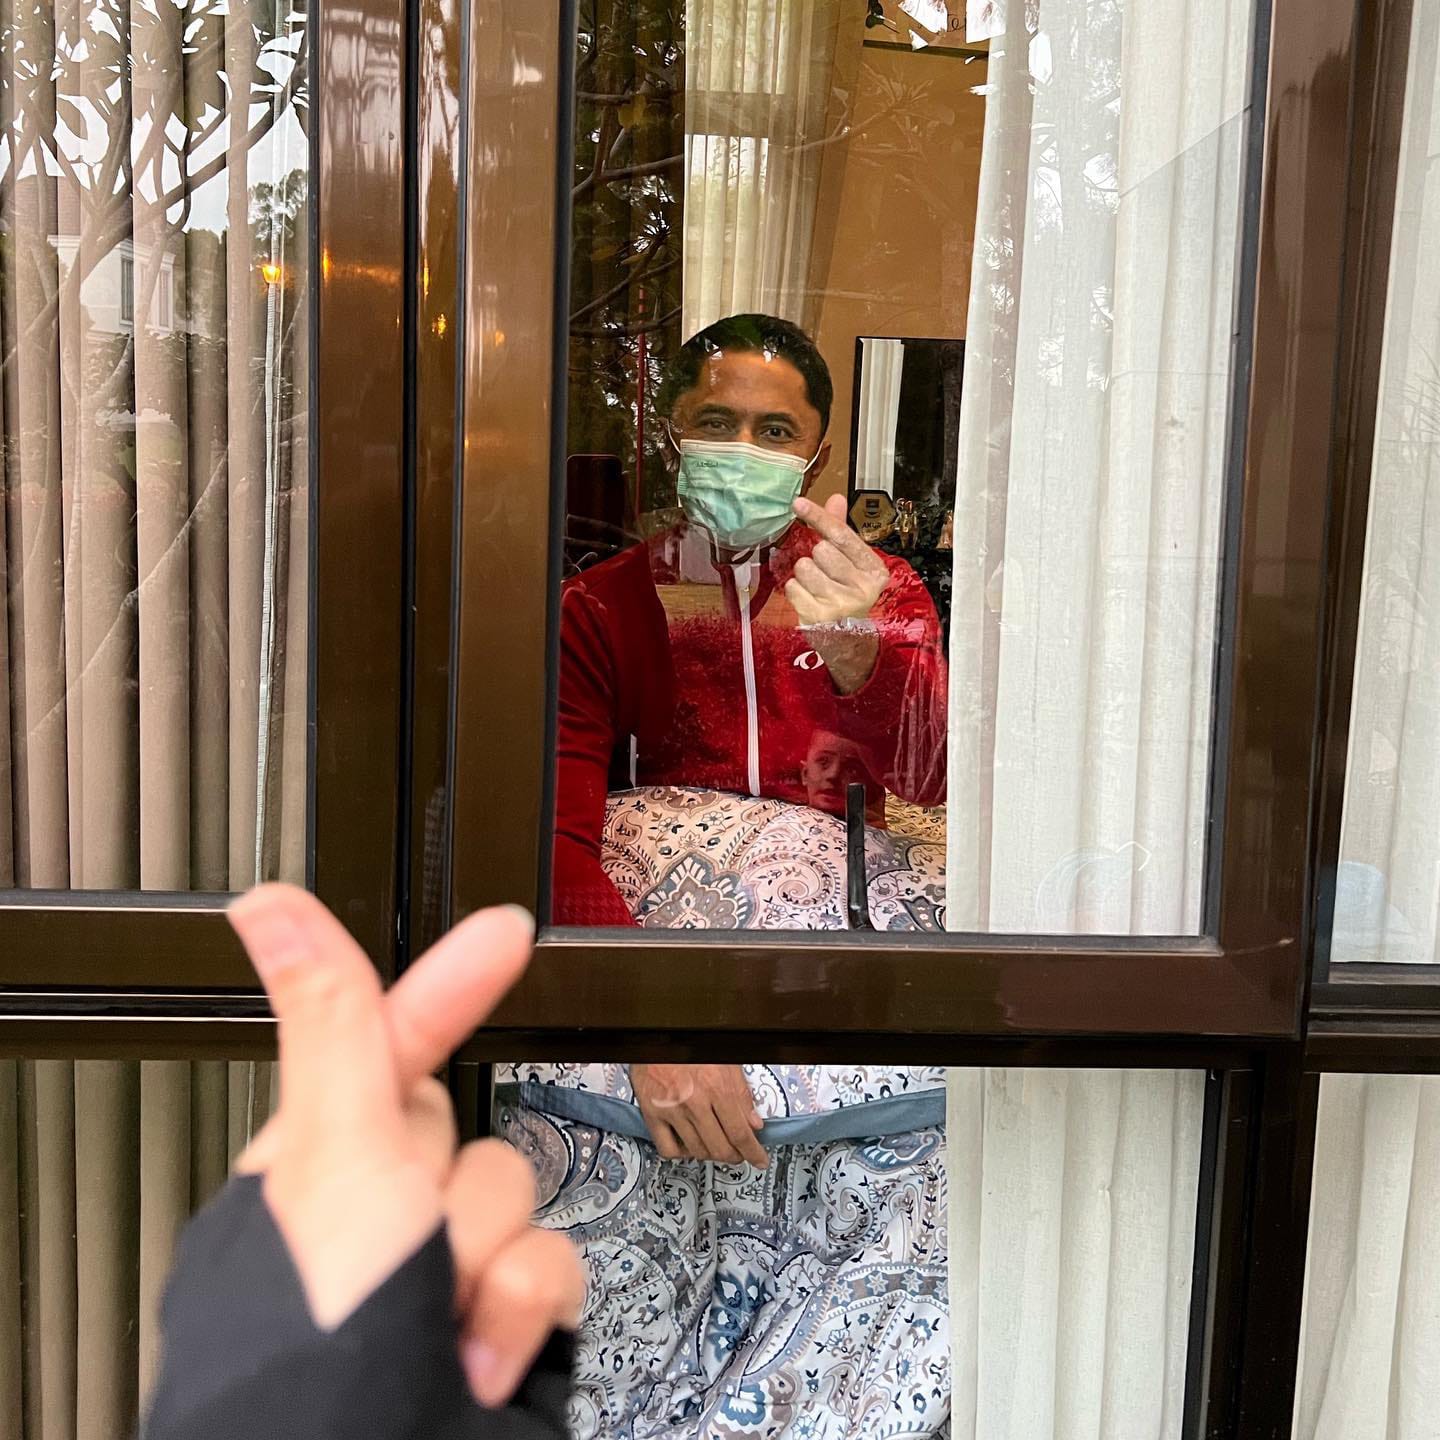 Tangkapan layar, salah satu unggahan Plt Bupati Bandung Barat Hengki Kurniwan yang memperlihatkan kondisinya saat isoman di kediamannya. (instagram)